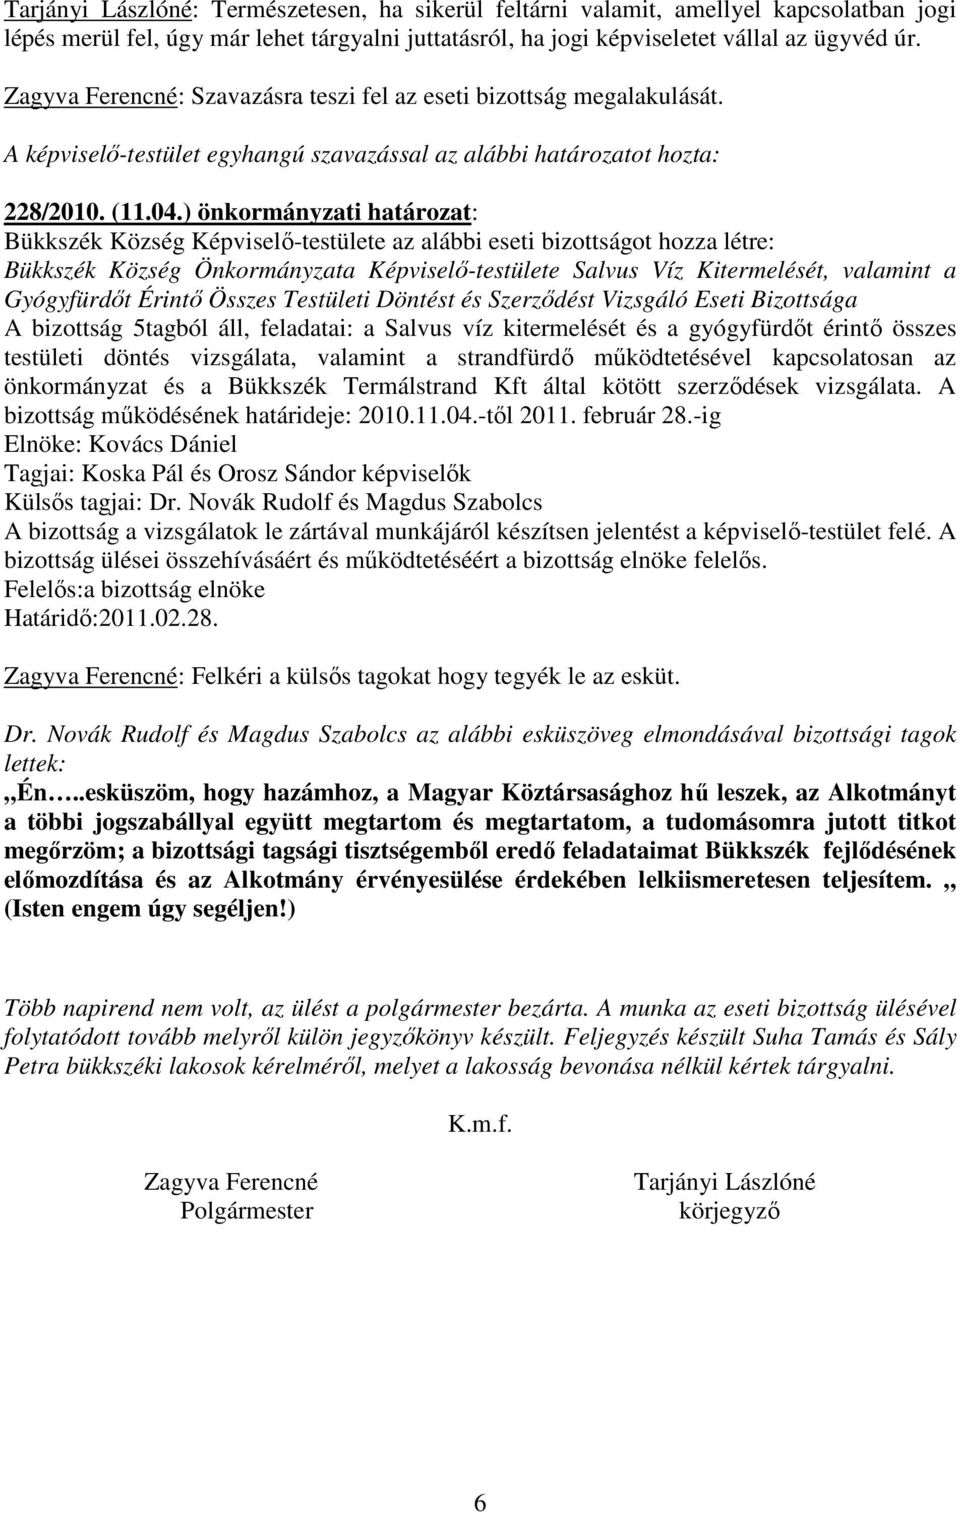 ) önkormányzati határozat: Bükkszék Község Képviselı-testülete az alábbi eseti bizottságot hozza létre: Bükkszék Község Önkormányzata Képviselı-testülete Salvus Víz Kitermelését, valamint a